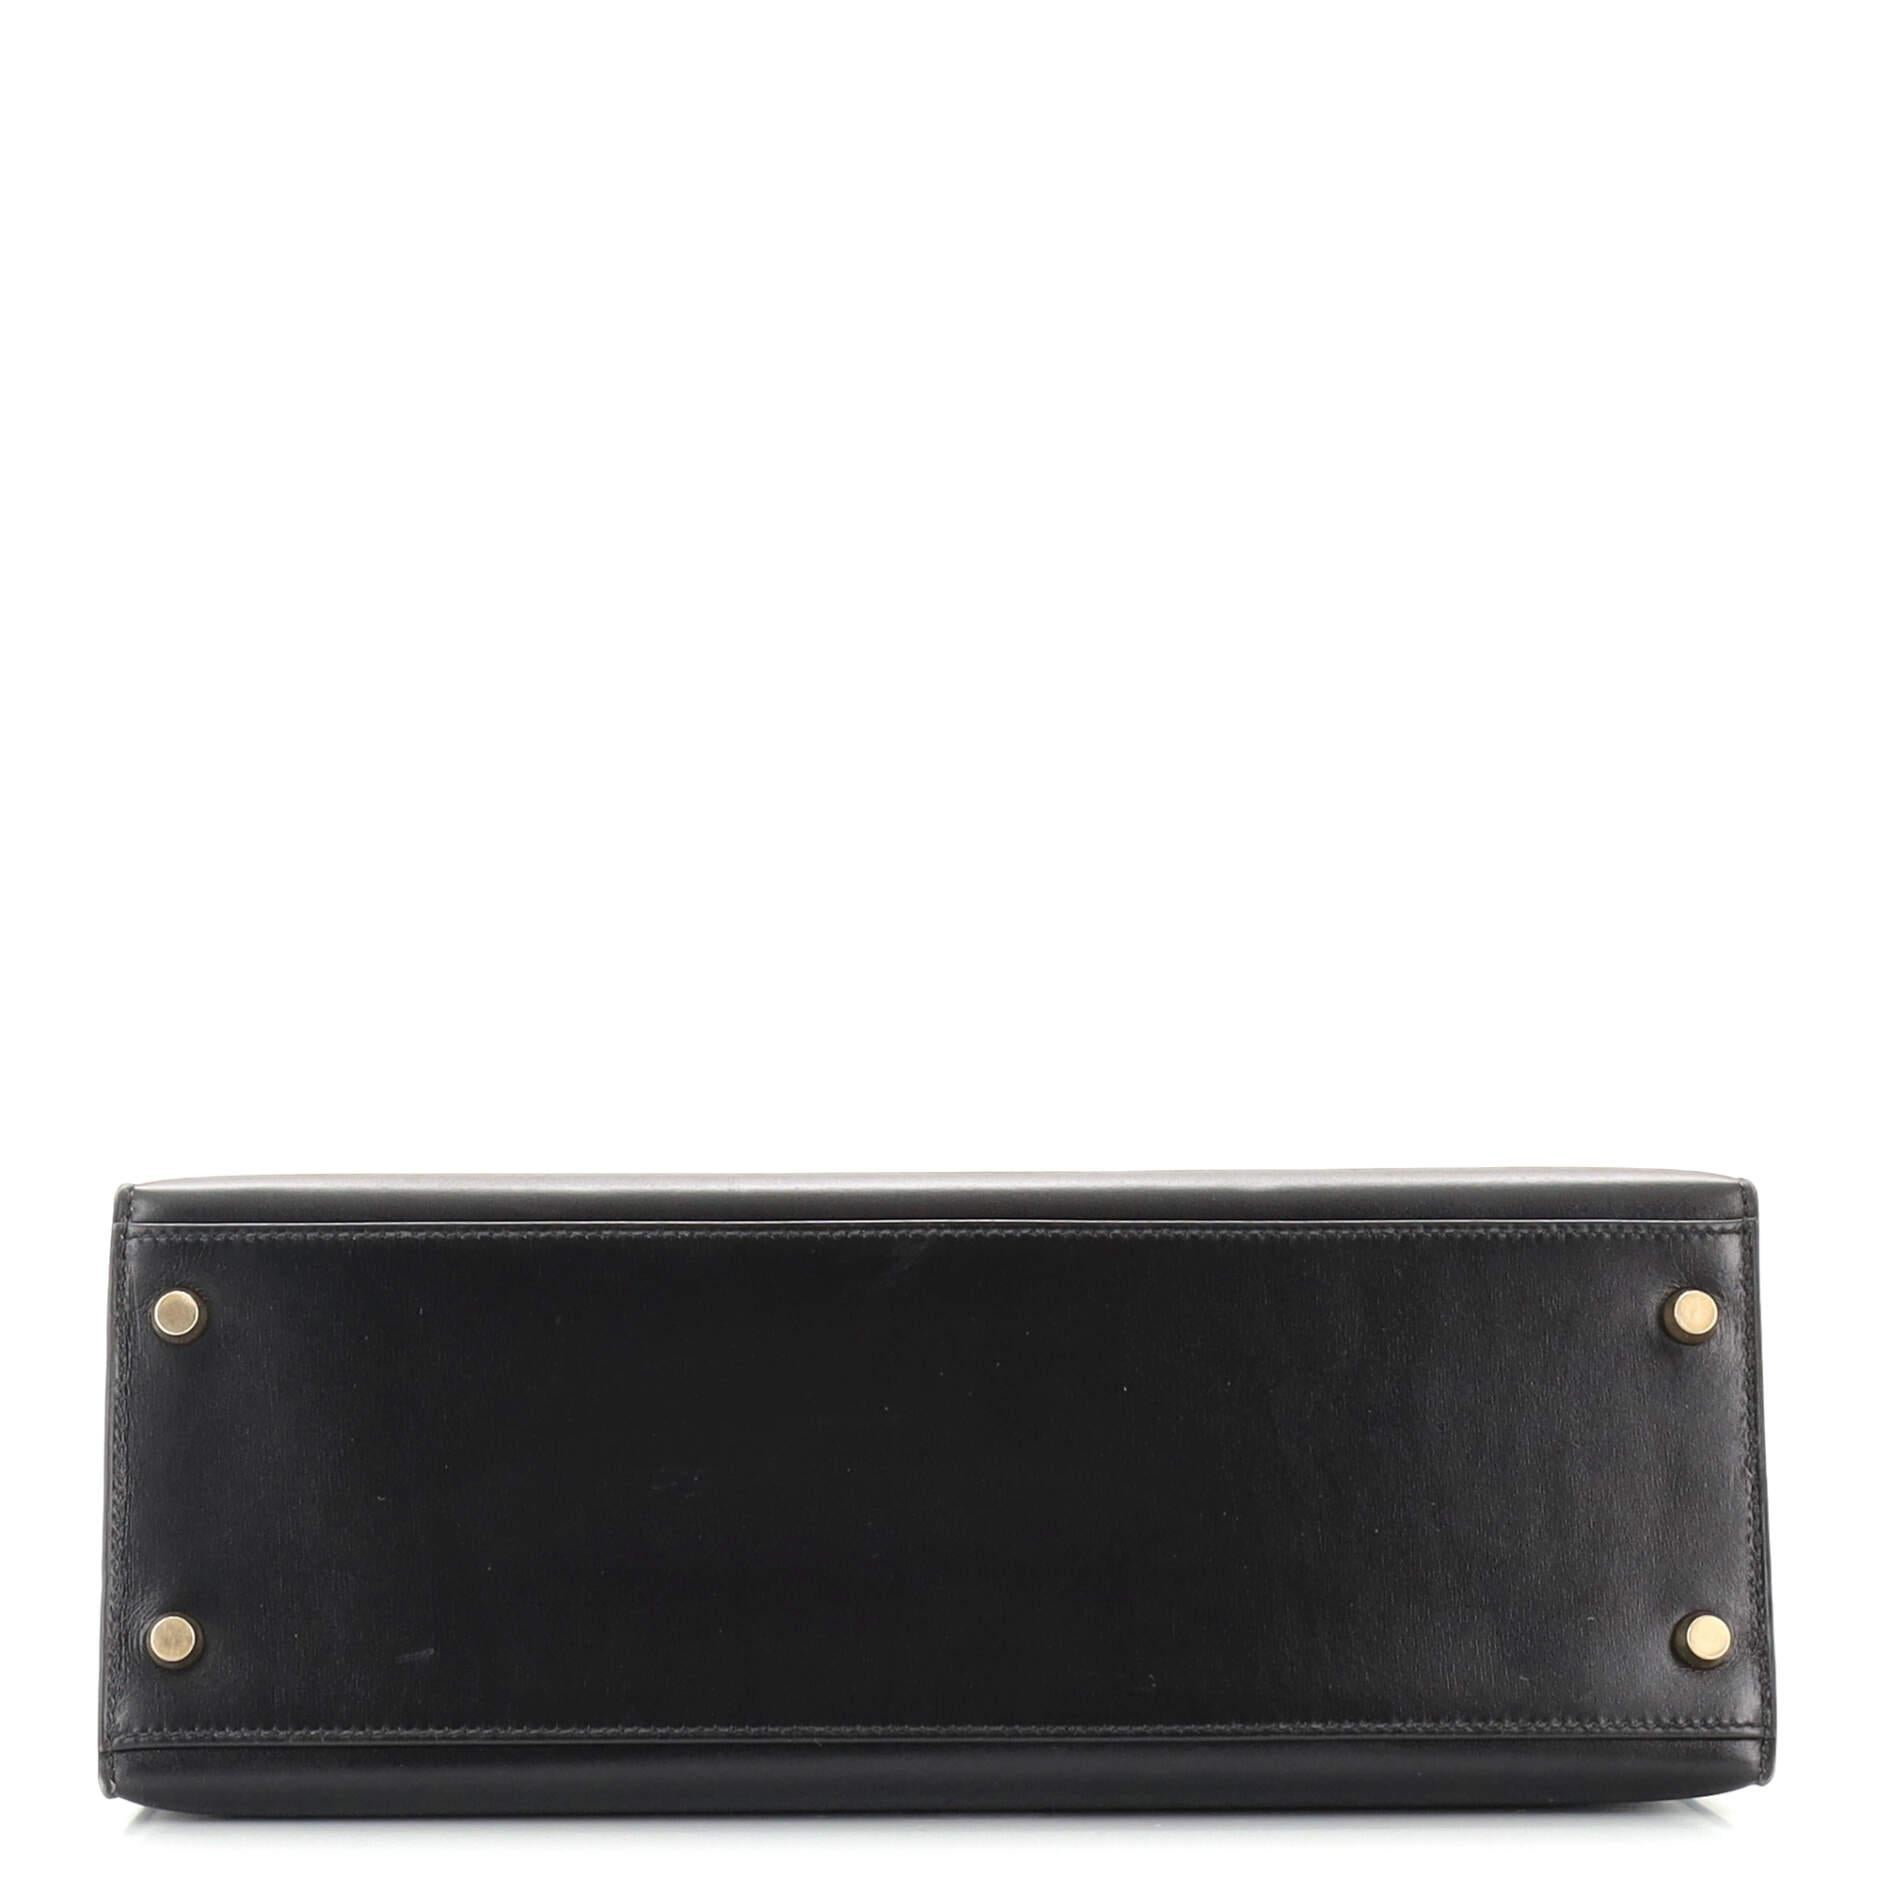 Women's or Men's Hermes Kelly Handbag Noir Box Calf with Gold Hardware 32